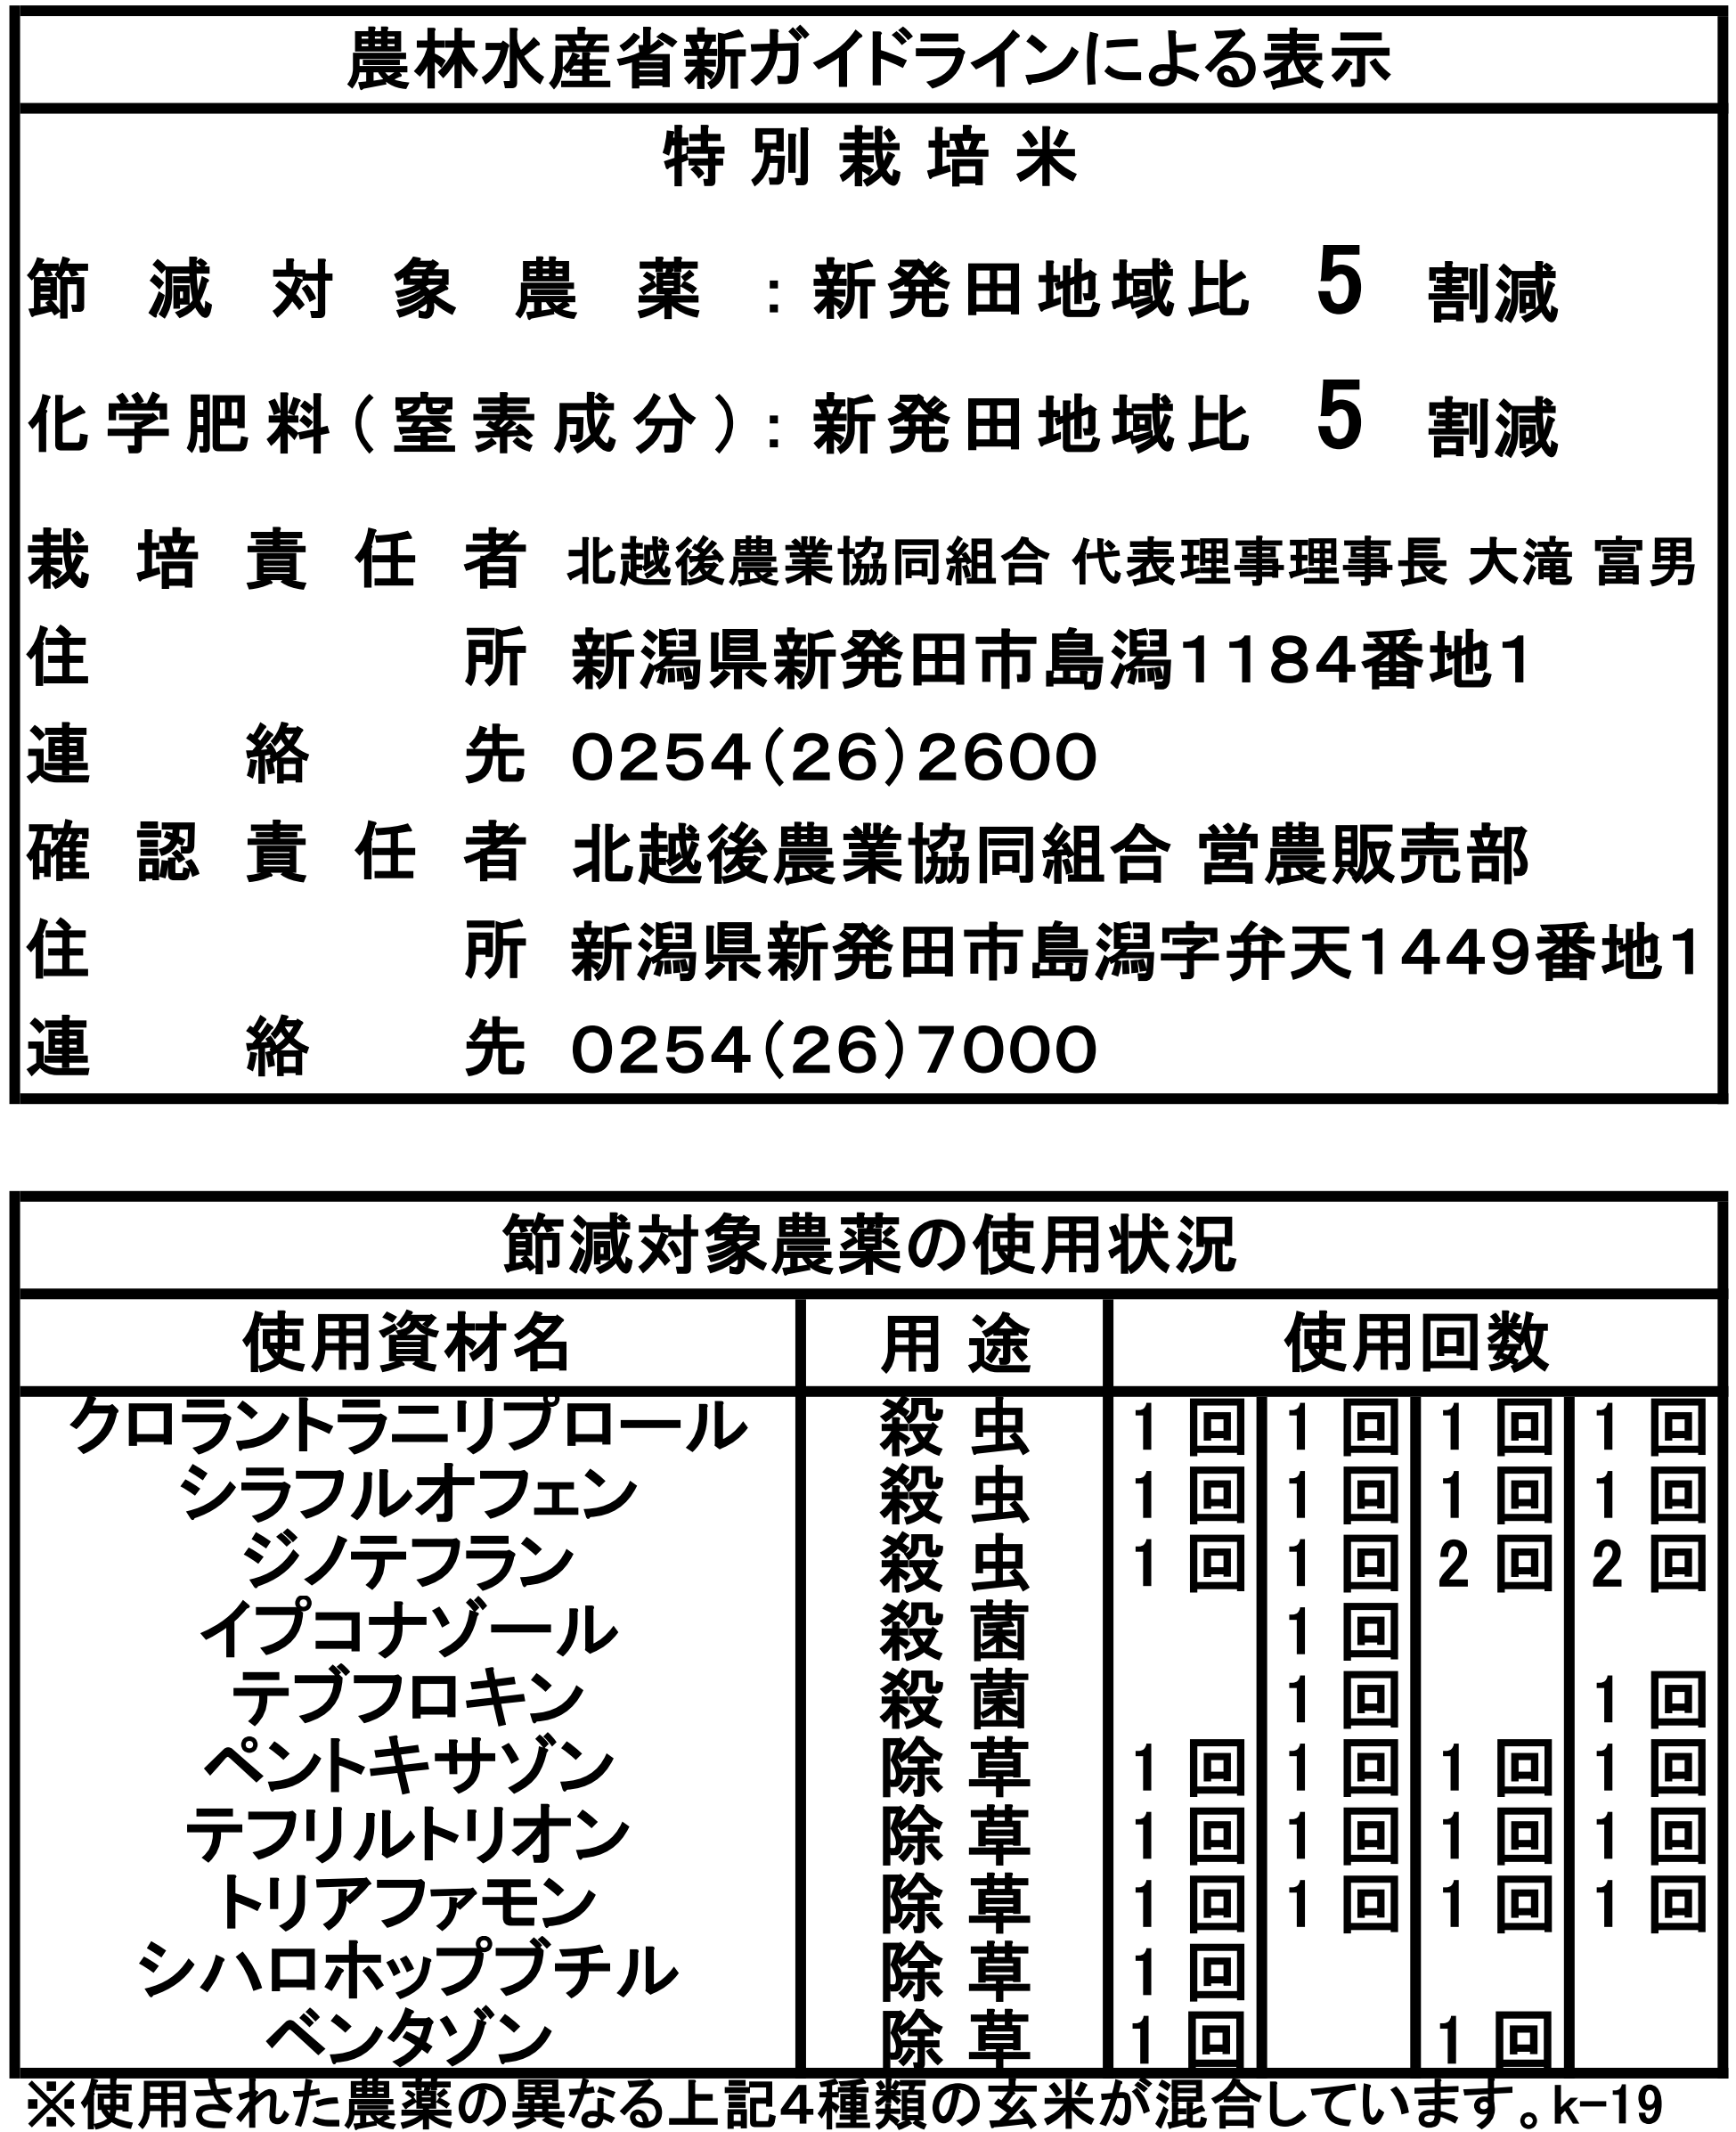 特別栽培米コシヒカリガイドライン(k-19)